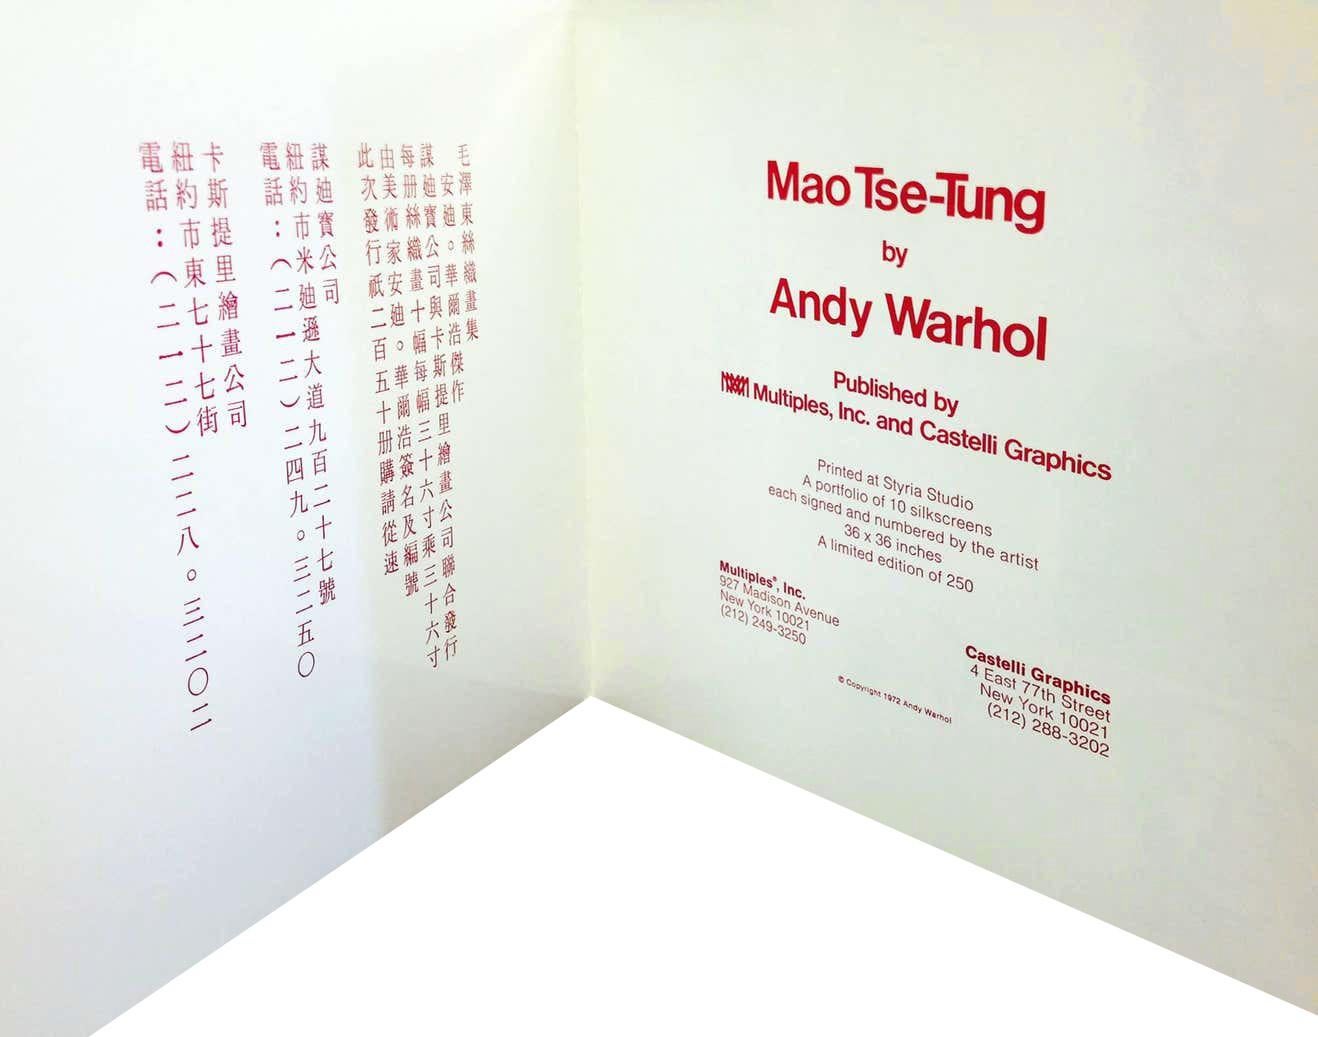 Andy Warhol Leo Castelli Gallery 1972: 
Die Galerie Leo Castelli brachte 1972 diese farbenfrohe, hochgradig sammelwürdige Andy Warhol Mao-Ankündigungskarte aus den 1970er Jahren heraus, um Andy Warhols bald erscheinende Mappe mit zehn Siebdrucken